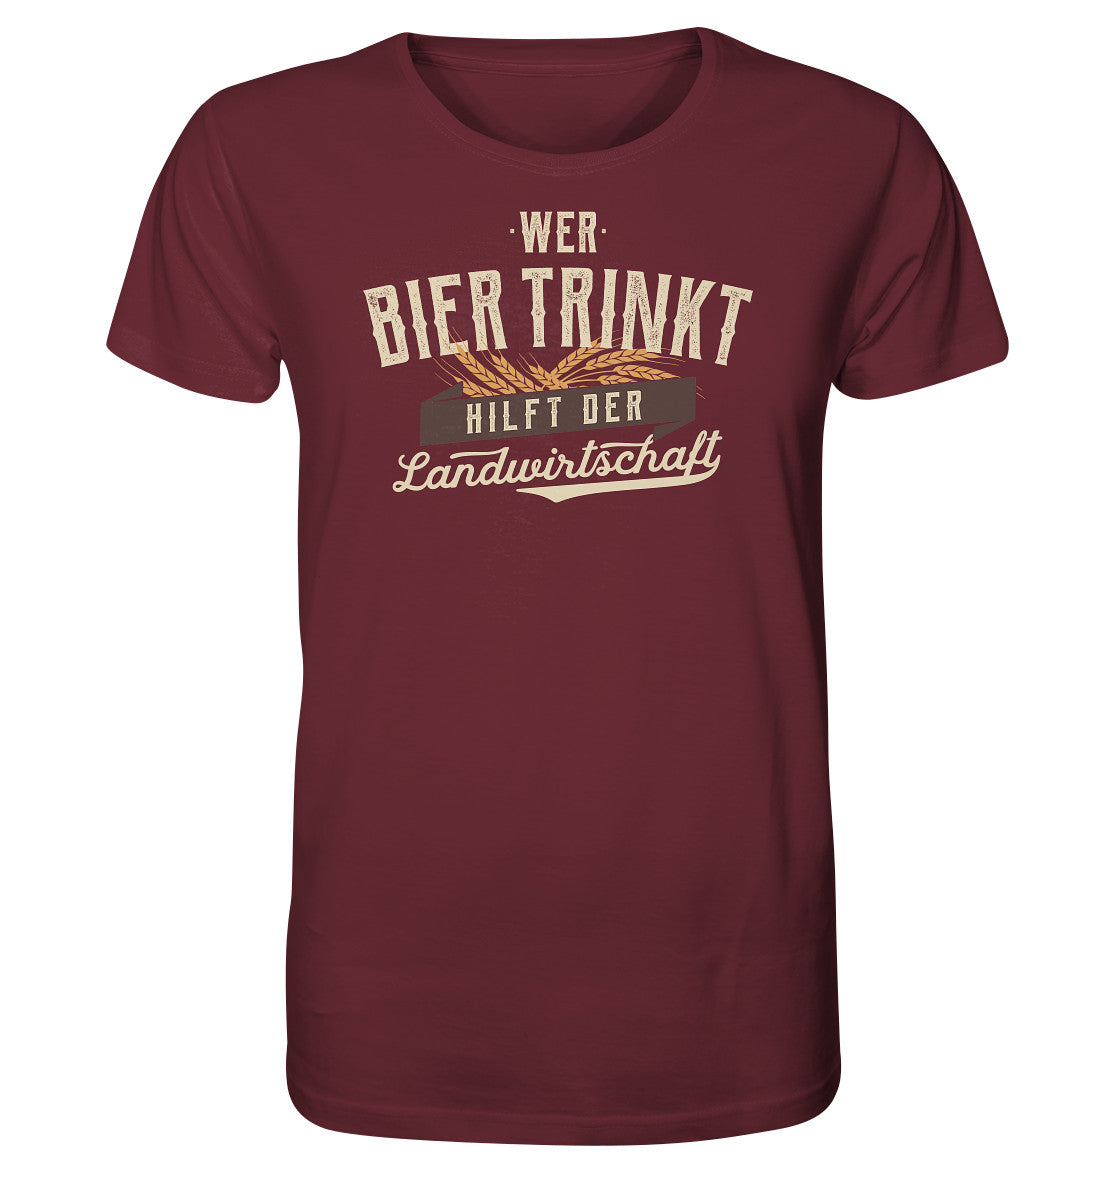 Wer Bier trinkt hilft der Landwirtschaft. Bier Shirt lustig Dorfkram® rot